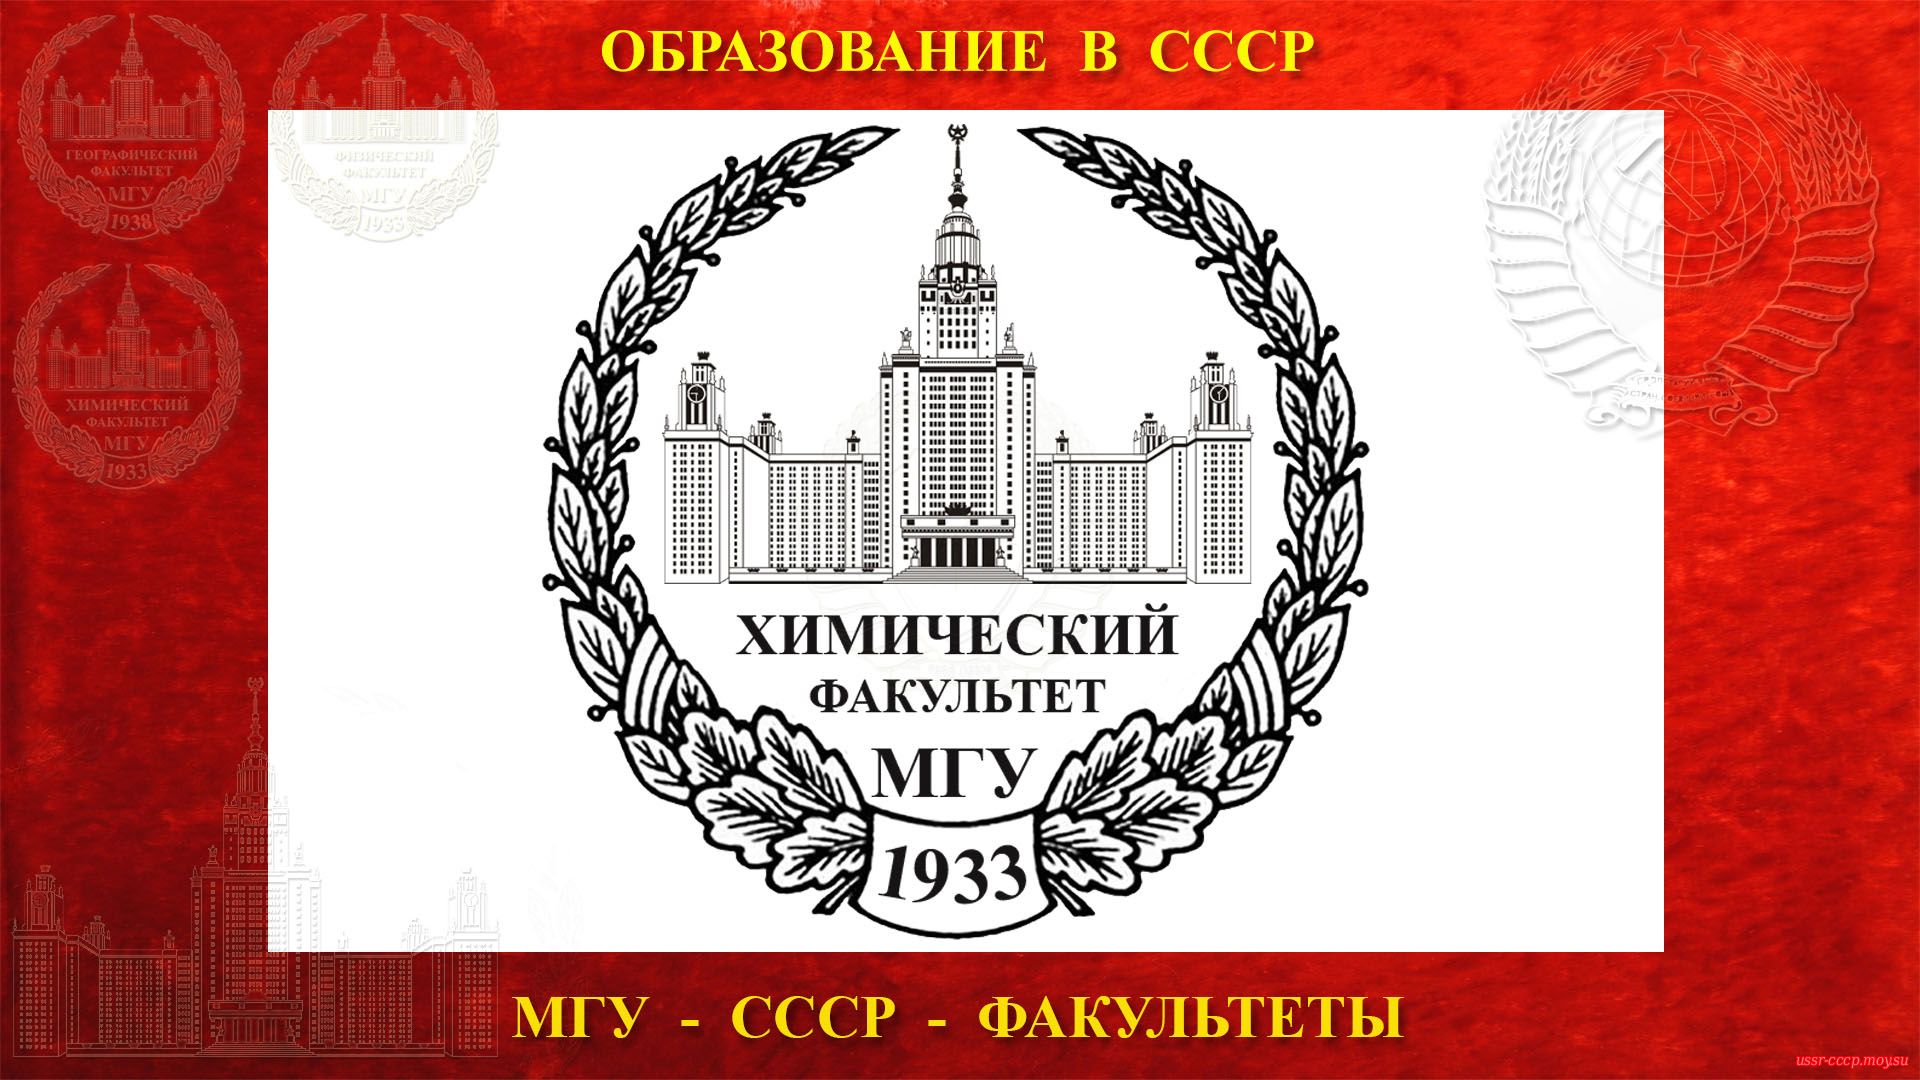 Химический факультет МГУ — (04.04.1933) полное повествование))